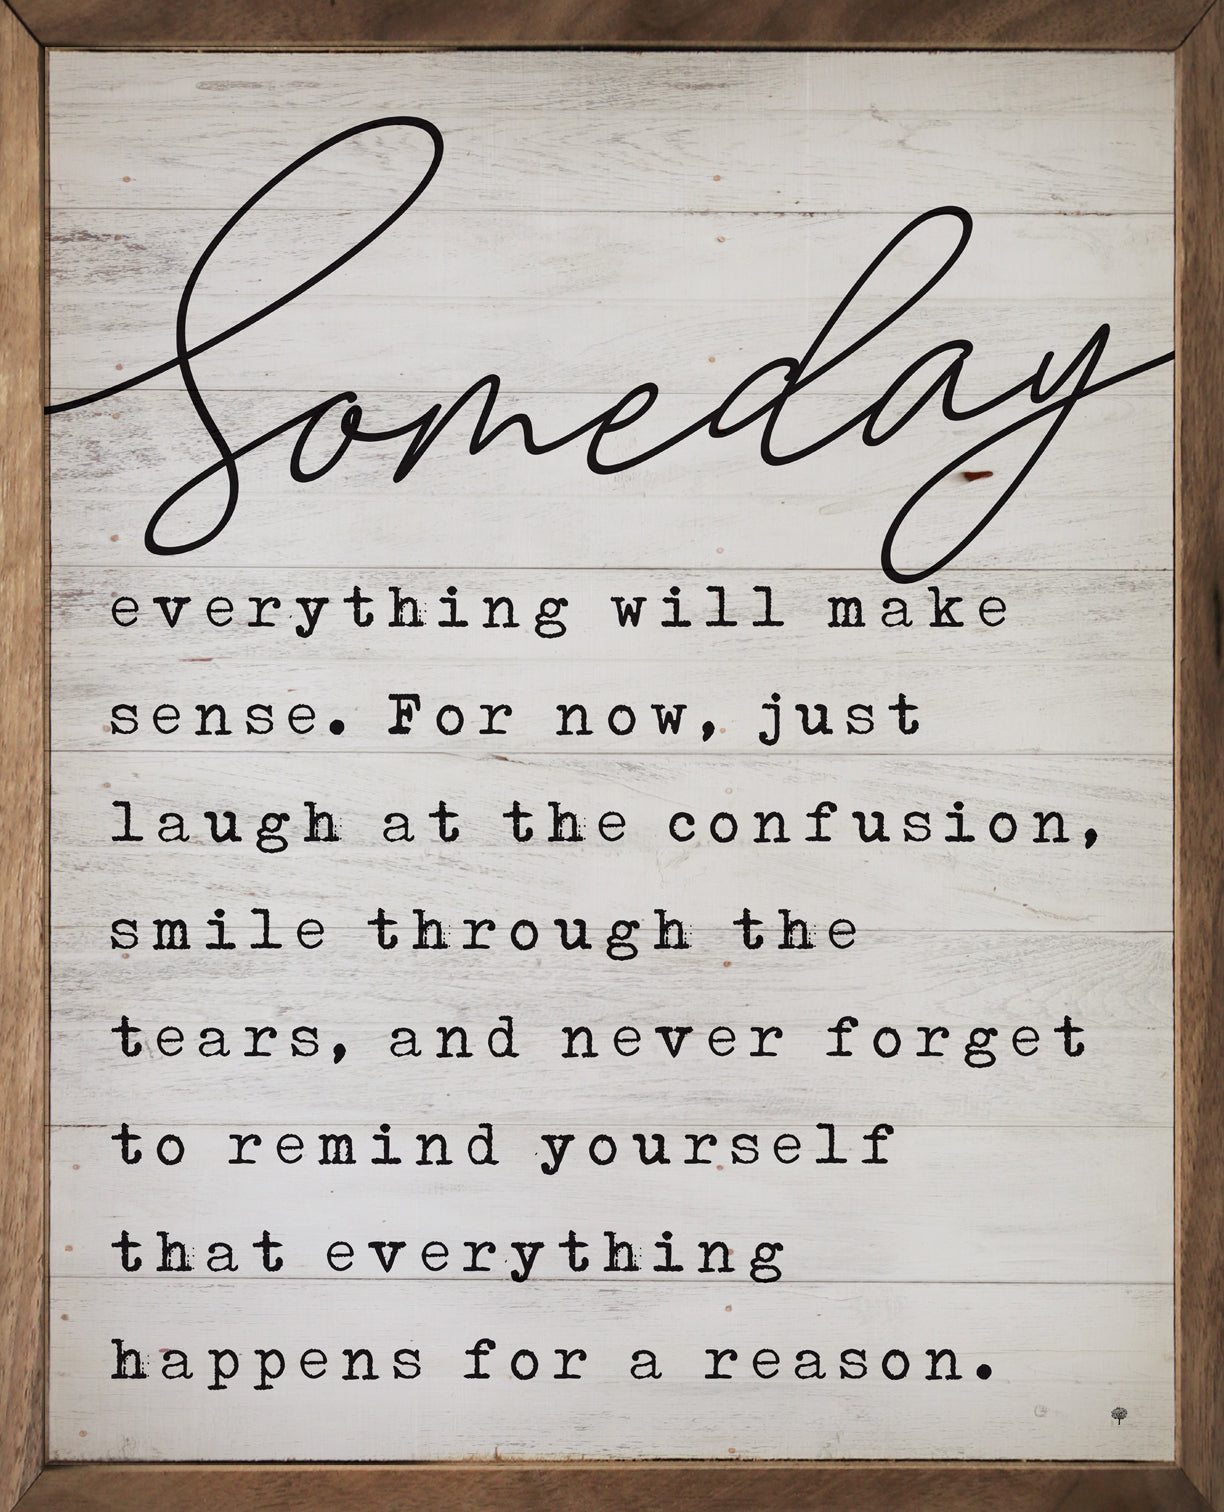 Someday everything will make sense